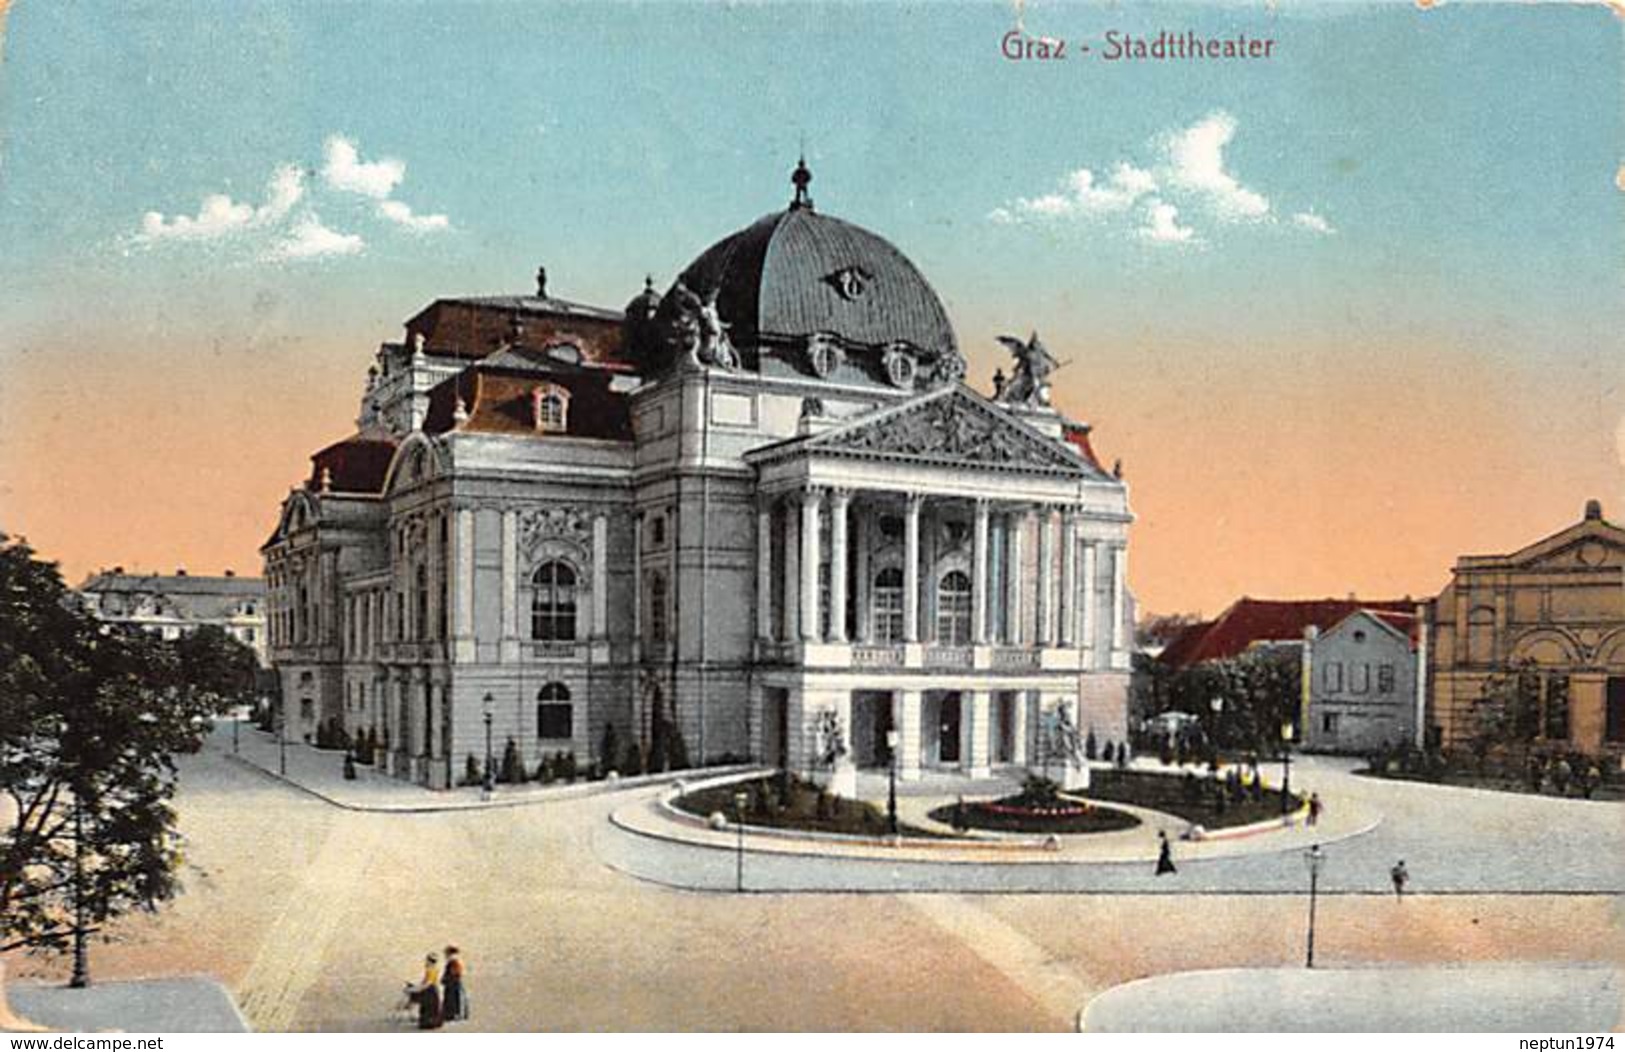 Graz, Stadttheater - Graz